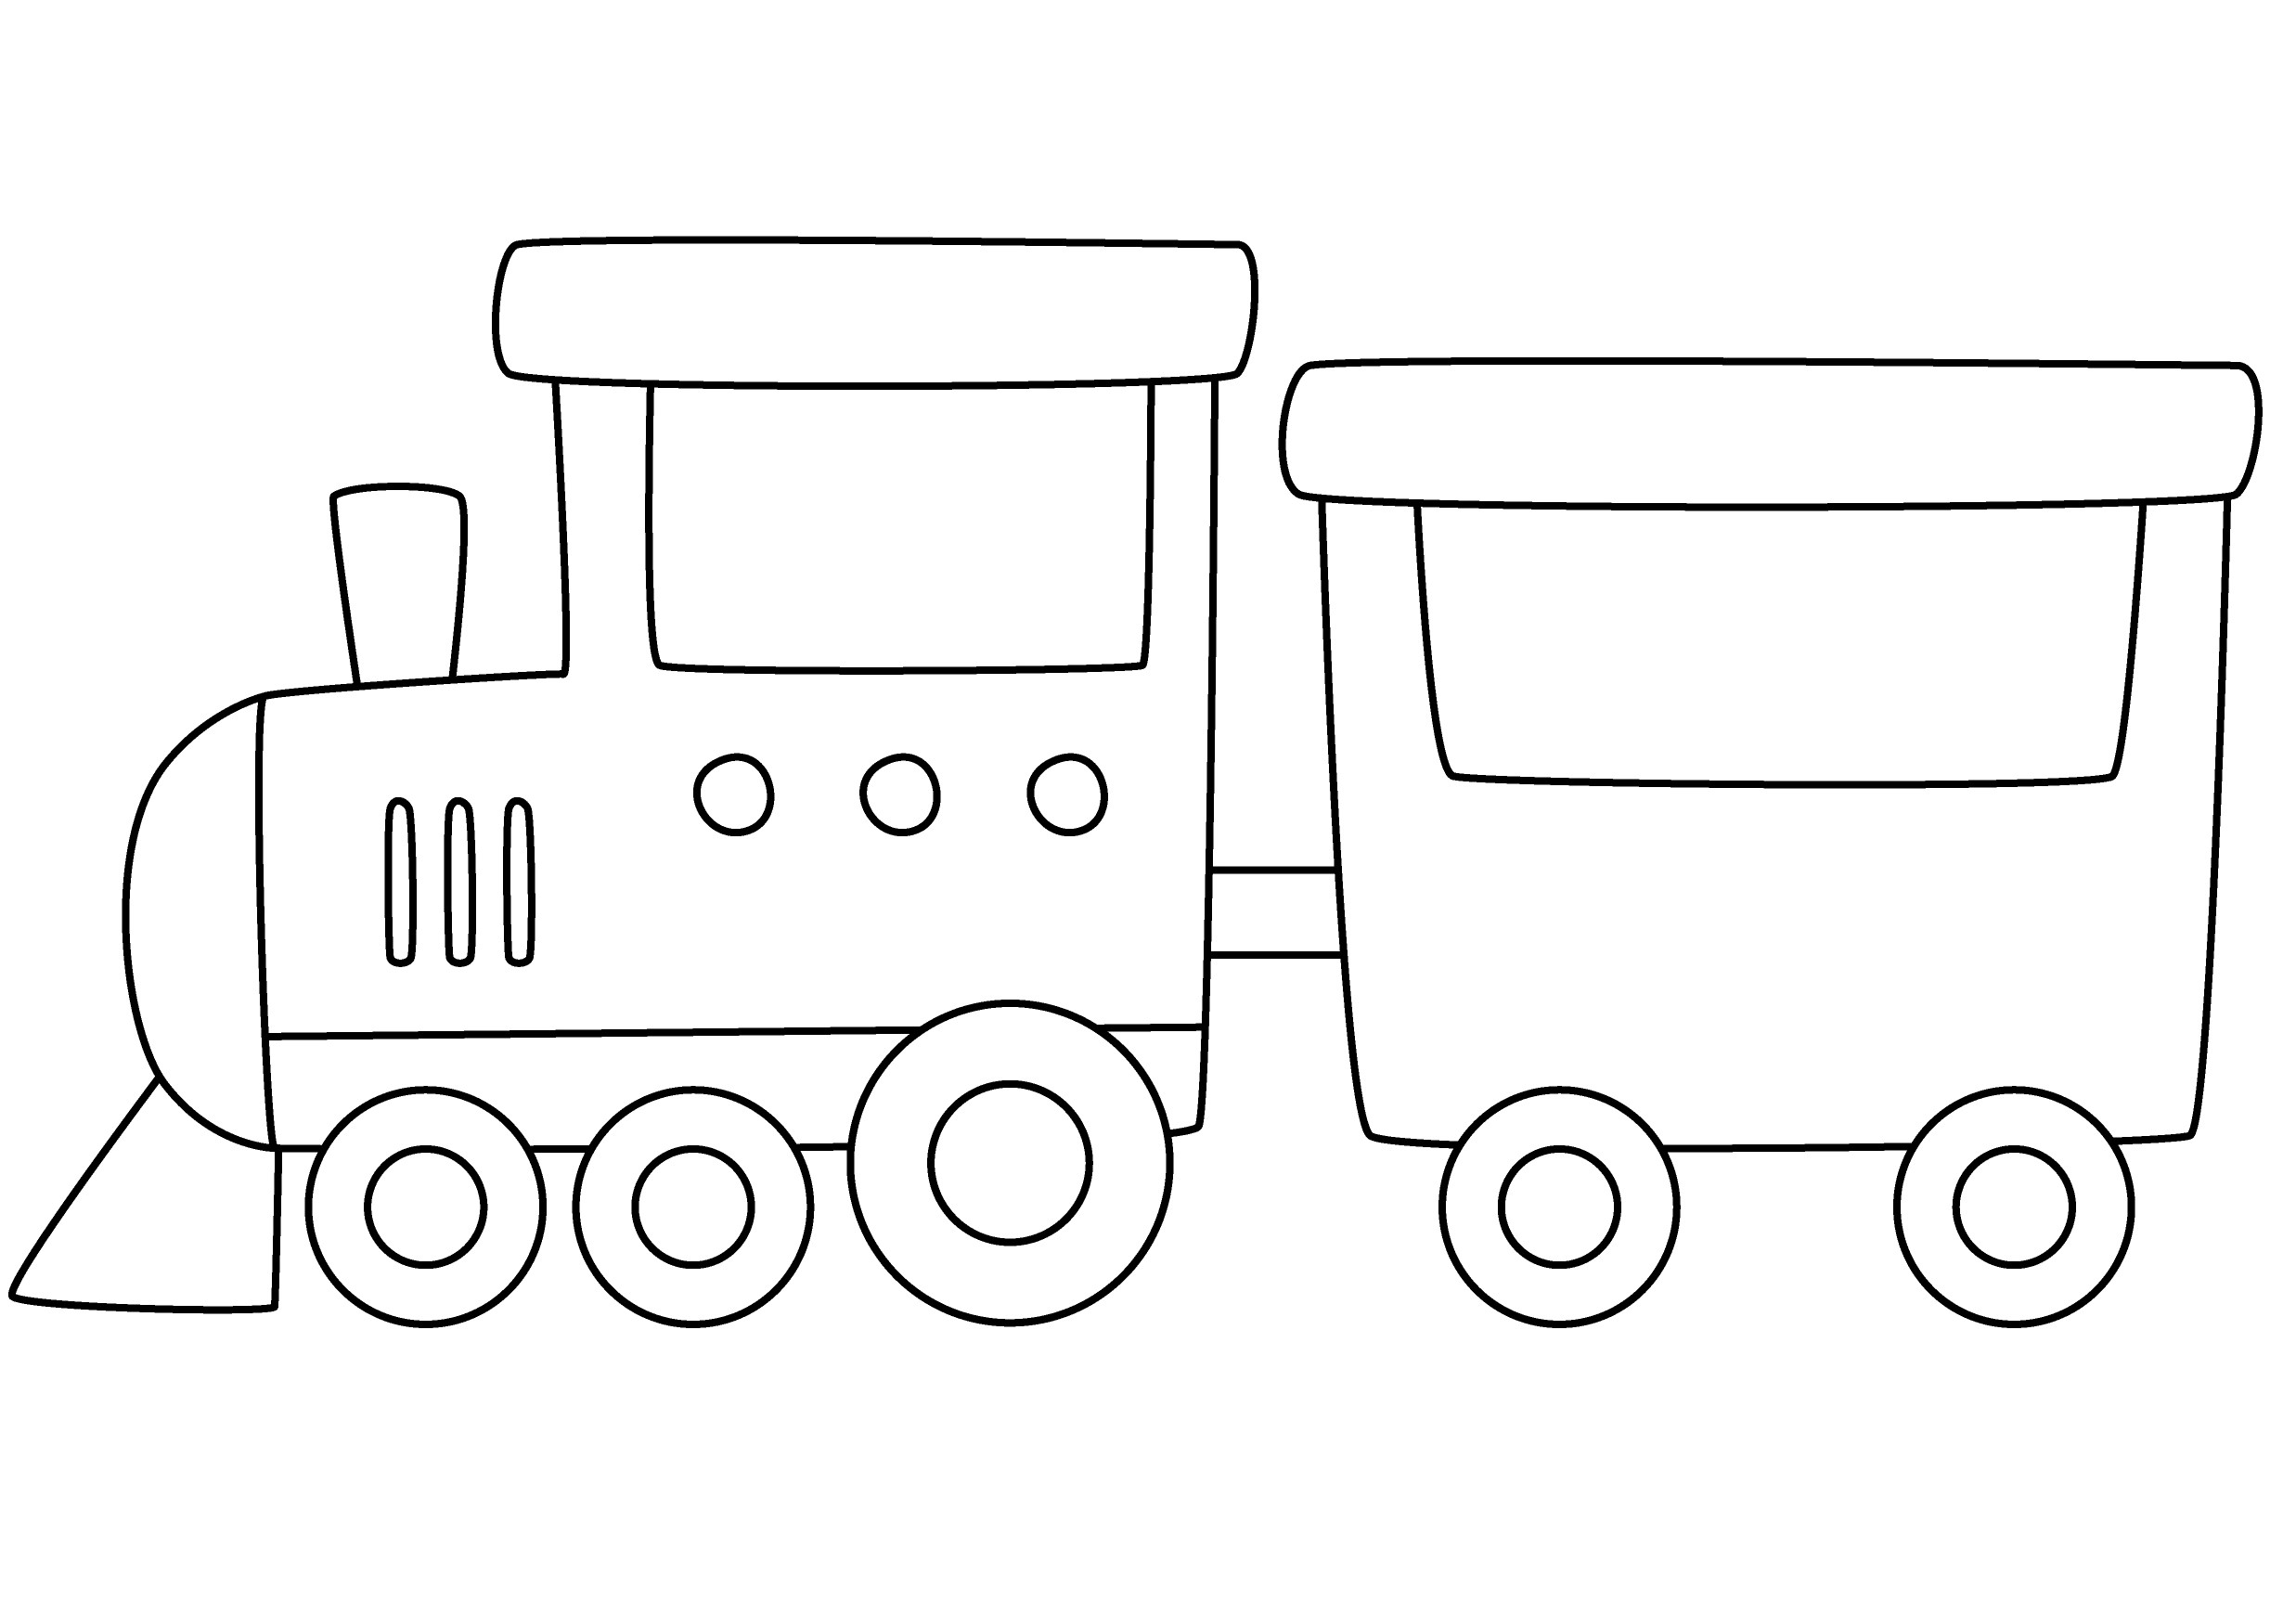 Раскраска паровозик для детей формата А4 в высоком качестве